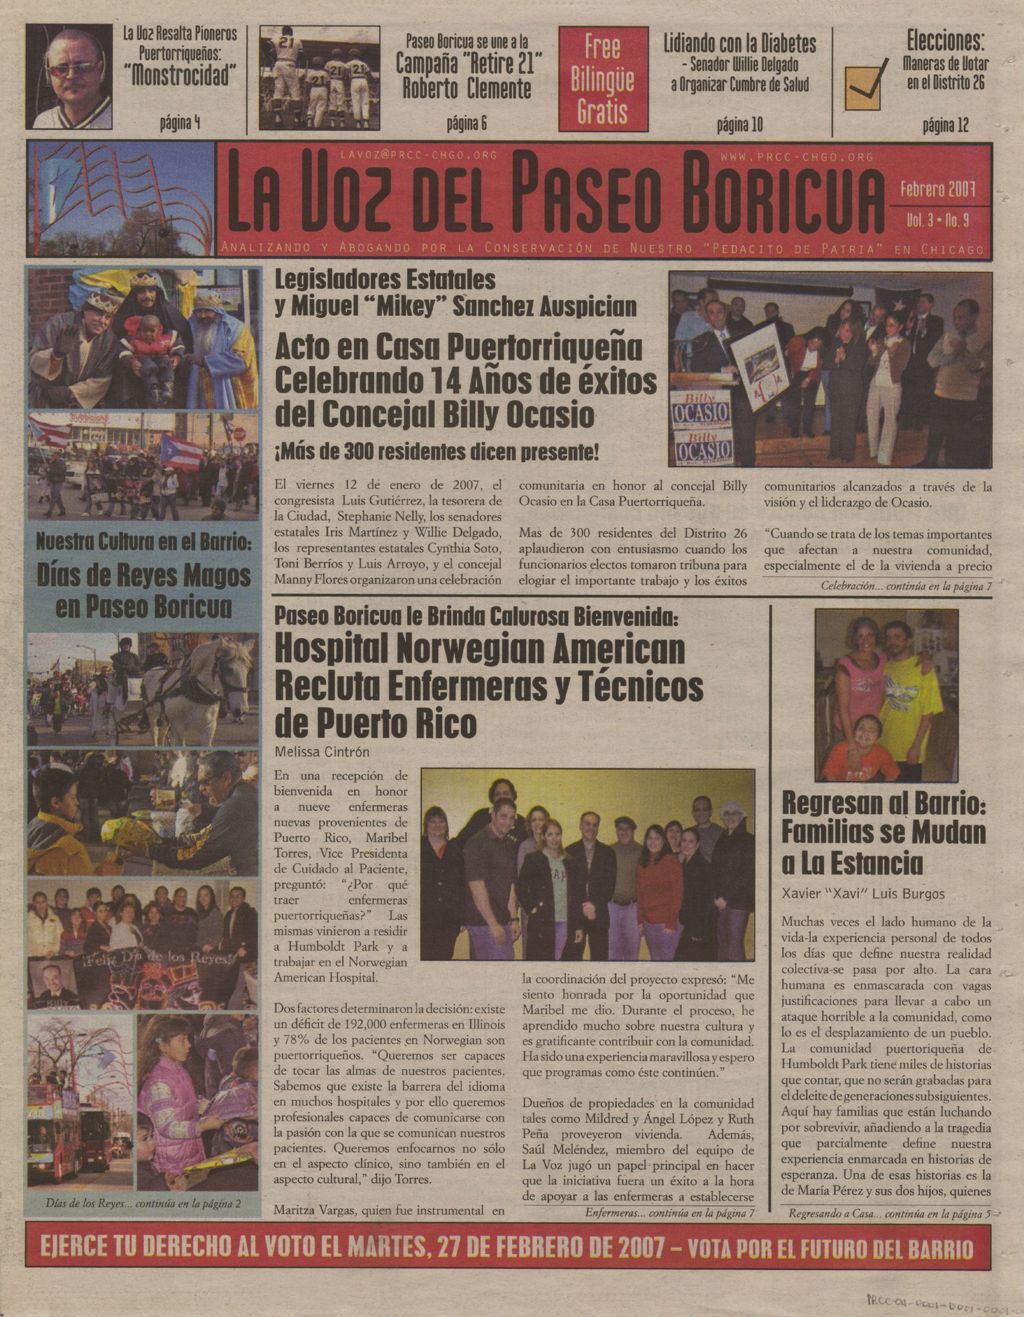 La Voz del Paseo Boricua; Febrero 2007; vol. 3, no. 9 (Spanish and English covers)